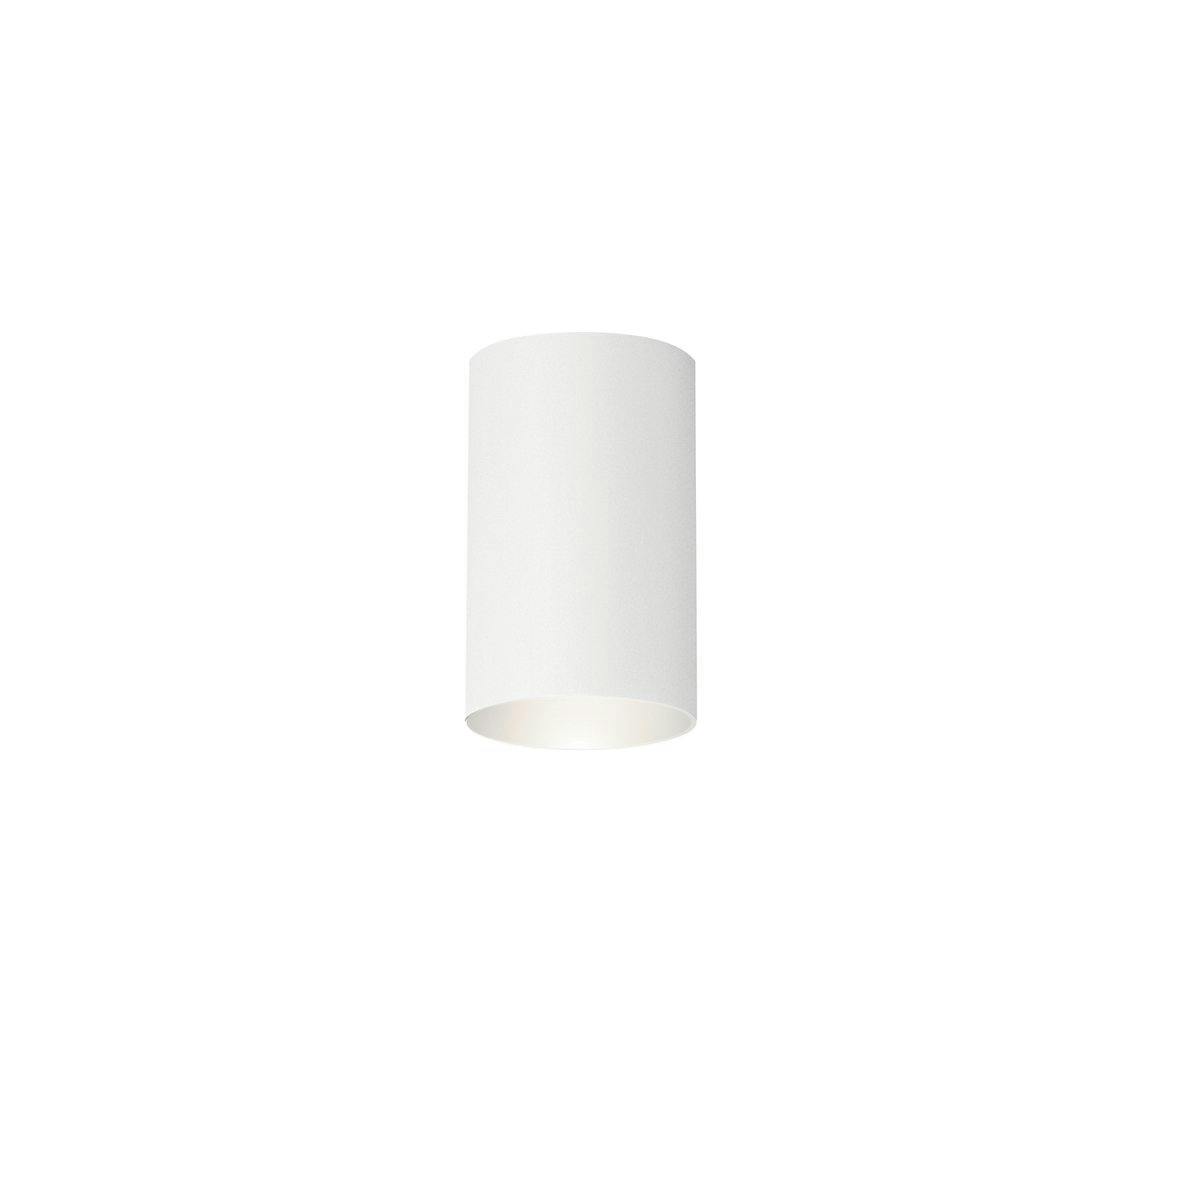 Beacon Square™ CLIMATES™ 4.5" Flush White on a white background